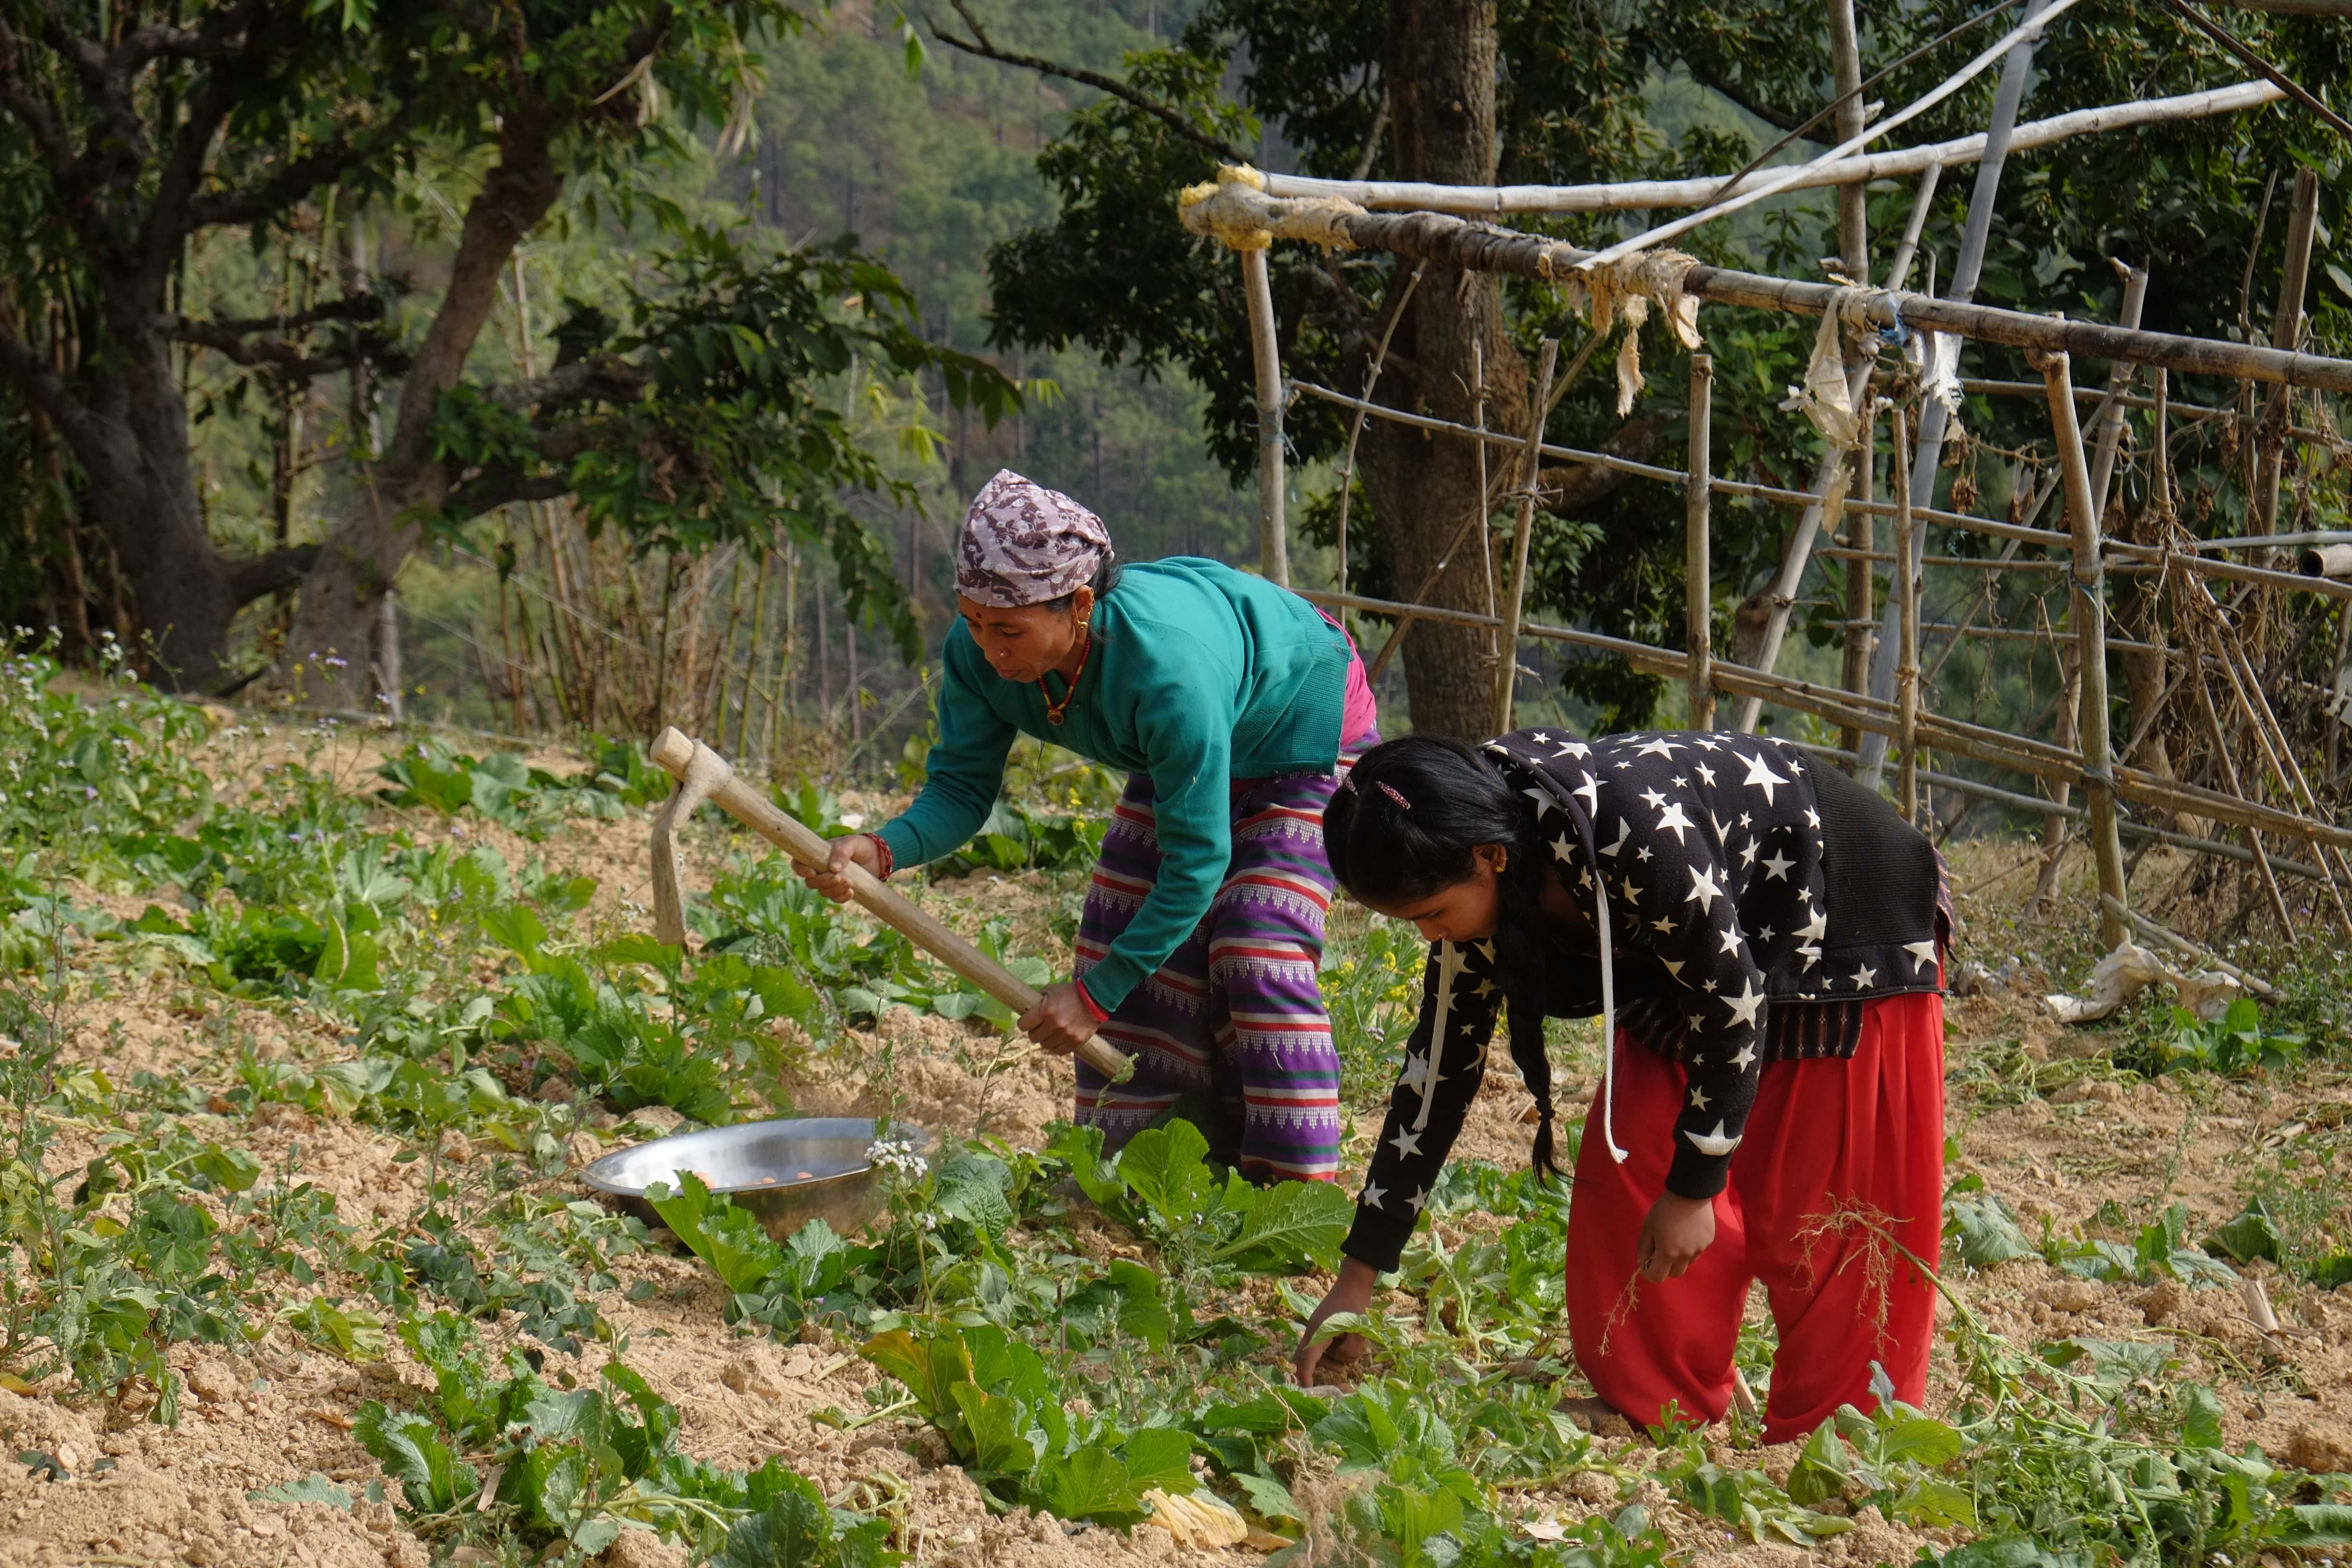 乐施会在尼泊尔多个地区开展生计项目，并以当地妇女为主要项目对象，让妇女学习更有效率、更能适应气候变化的种植技术。（摄影︰Wingo Chan / 乐施会义务摄影师）